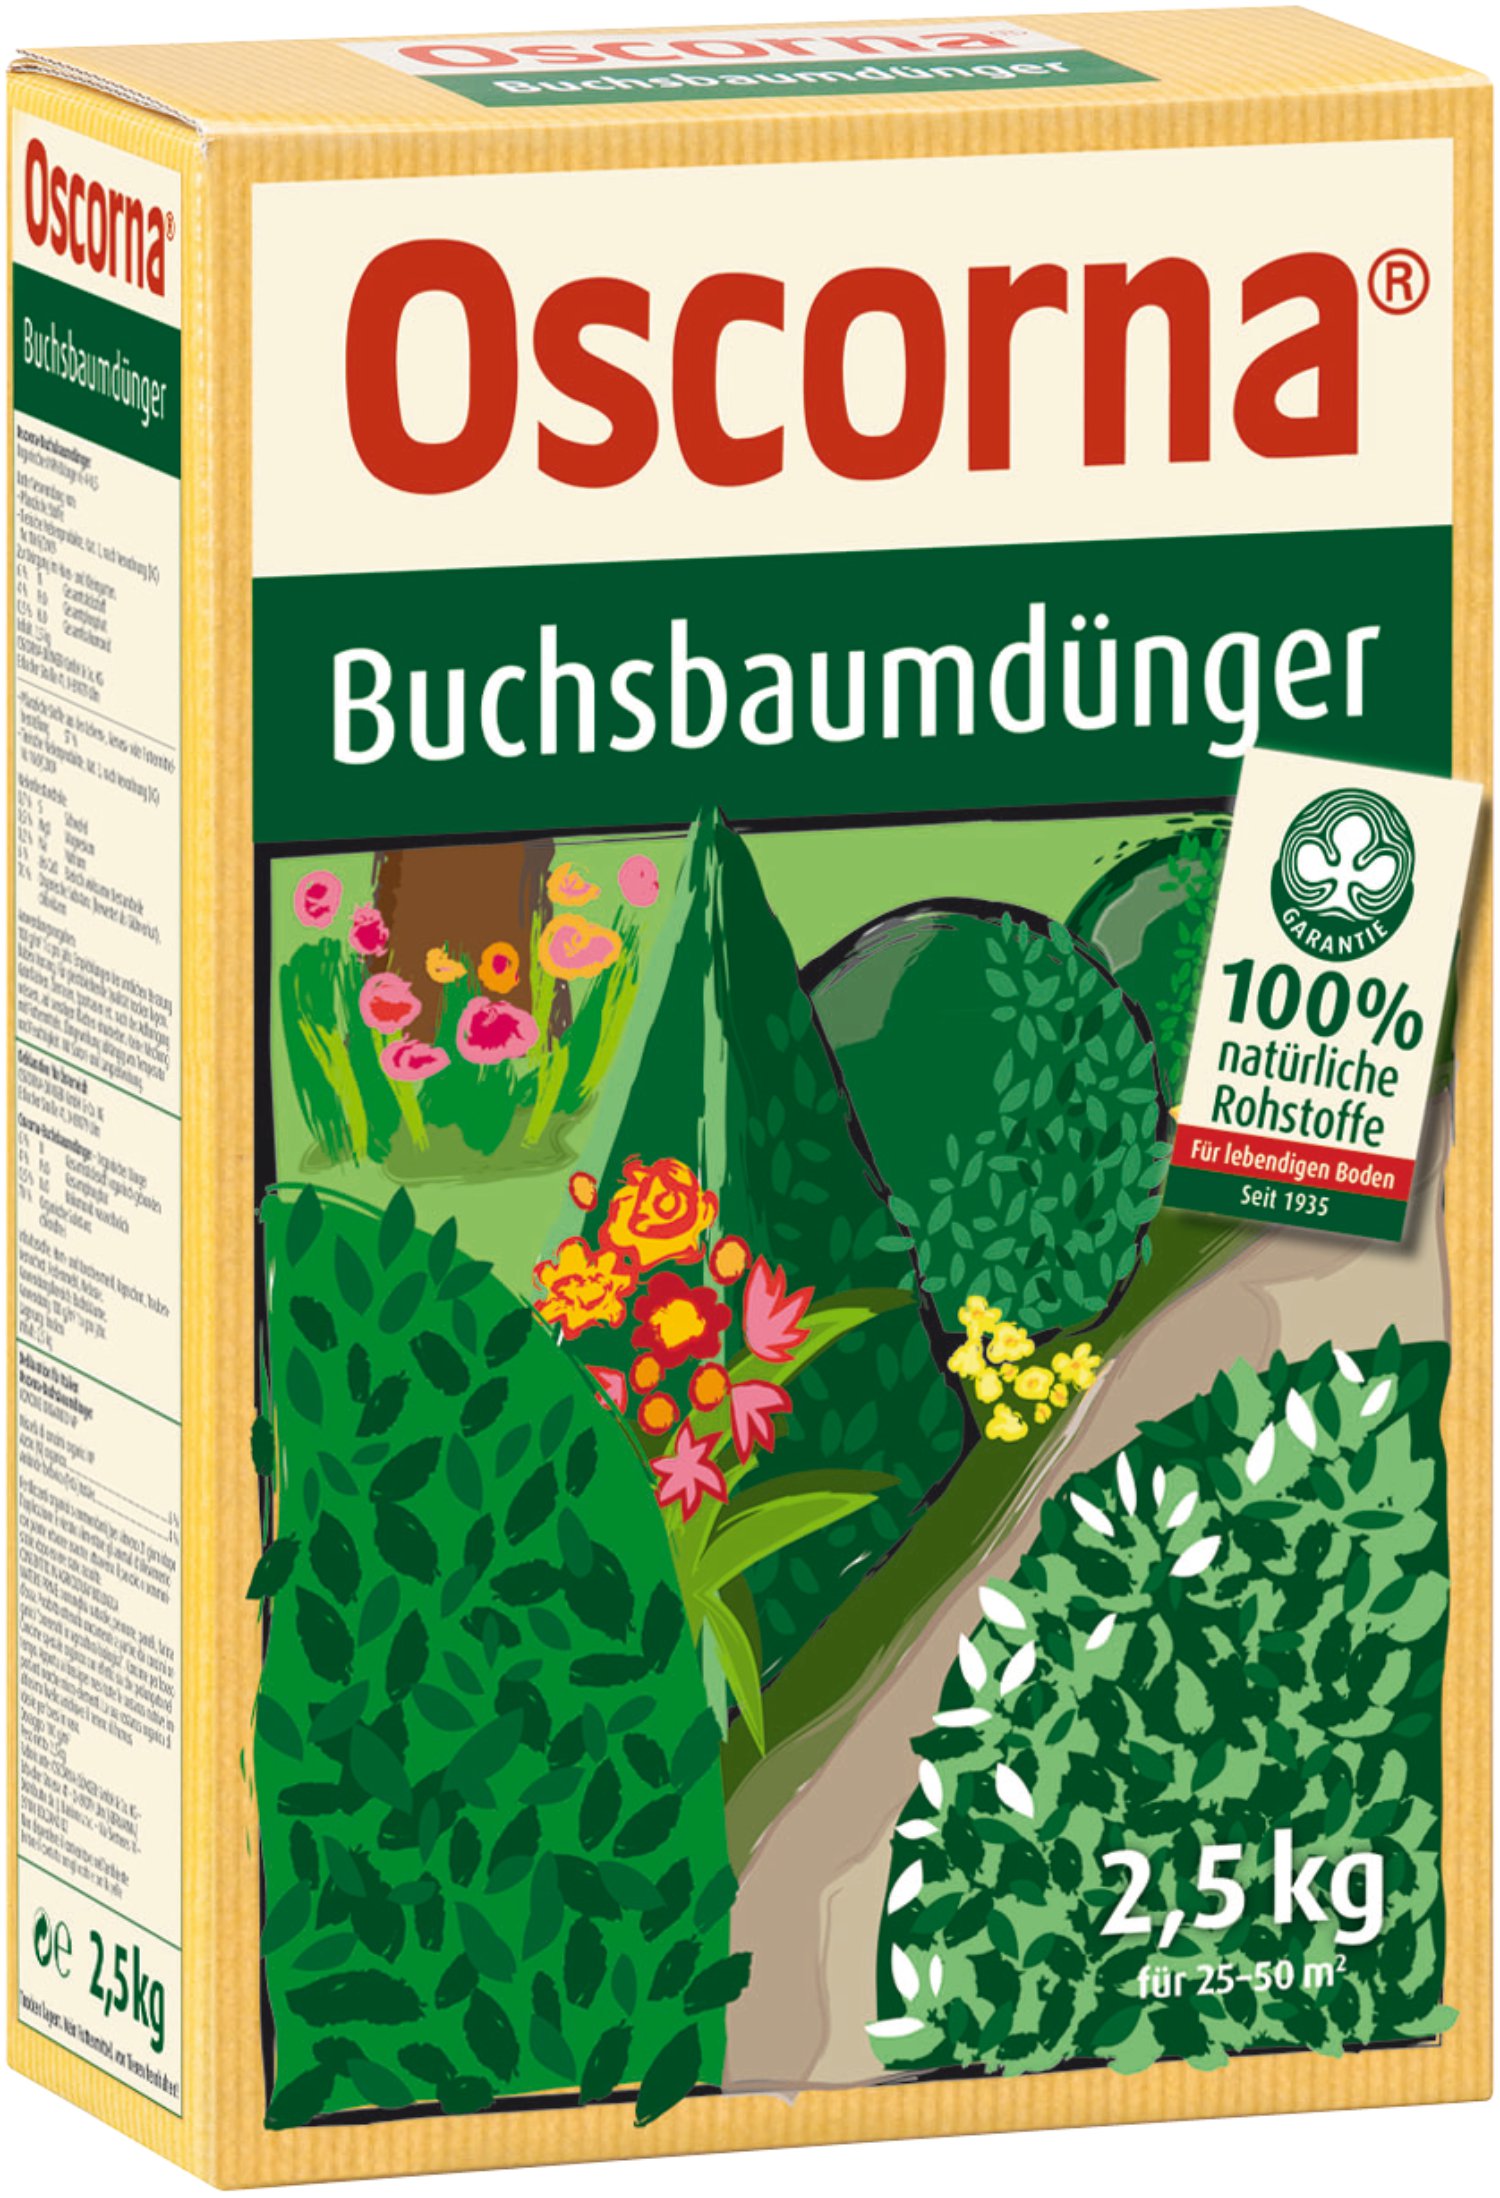 OSCORNA Buchsbaumdünger 2,5 kg